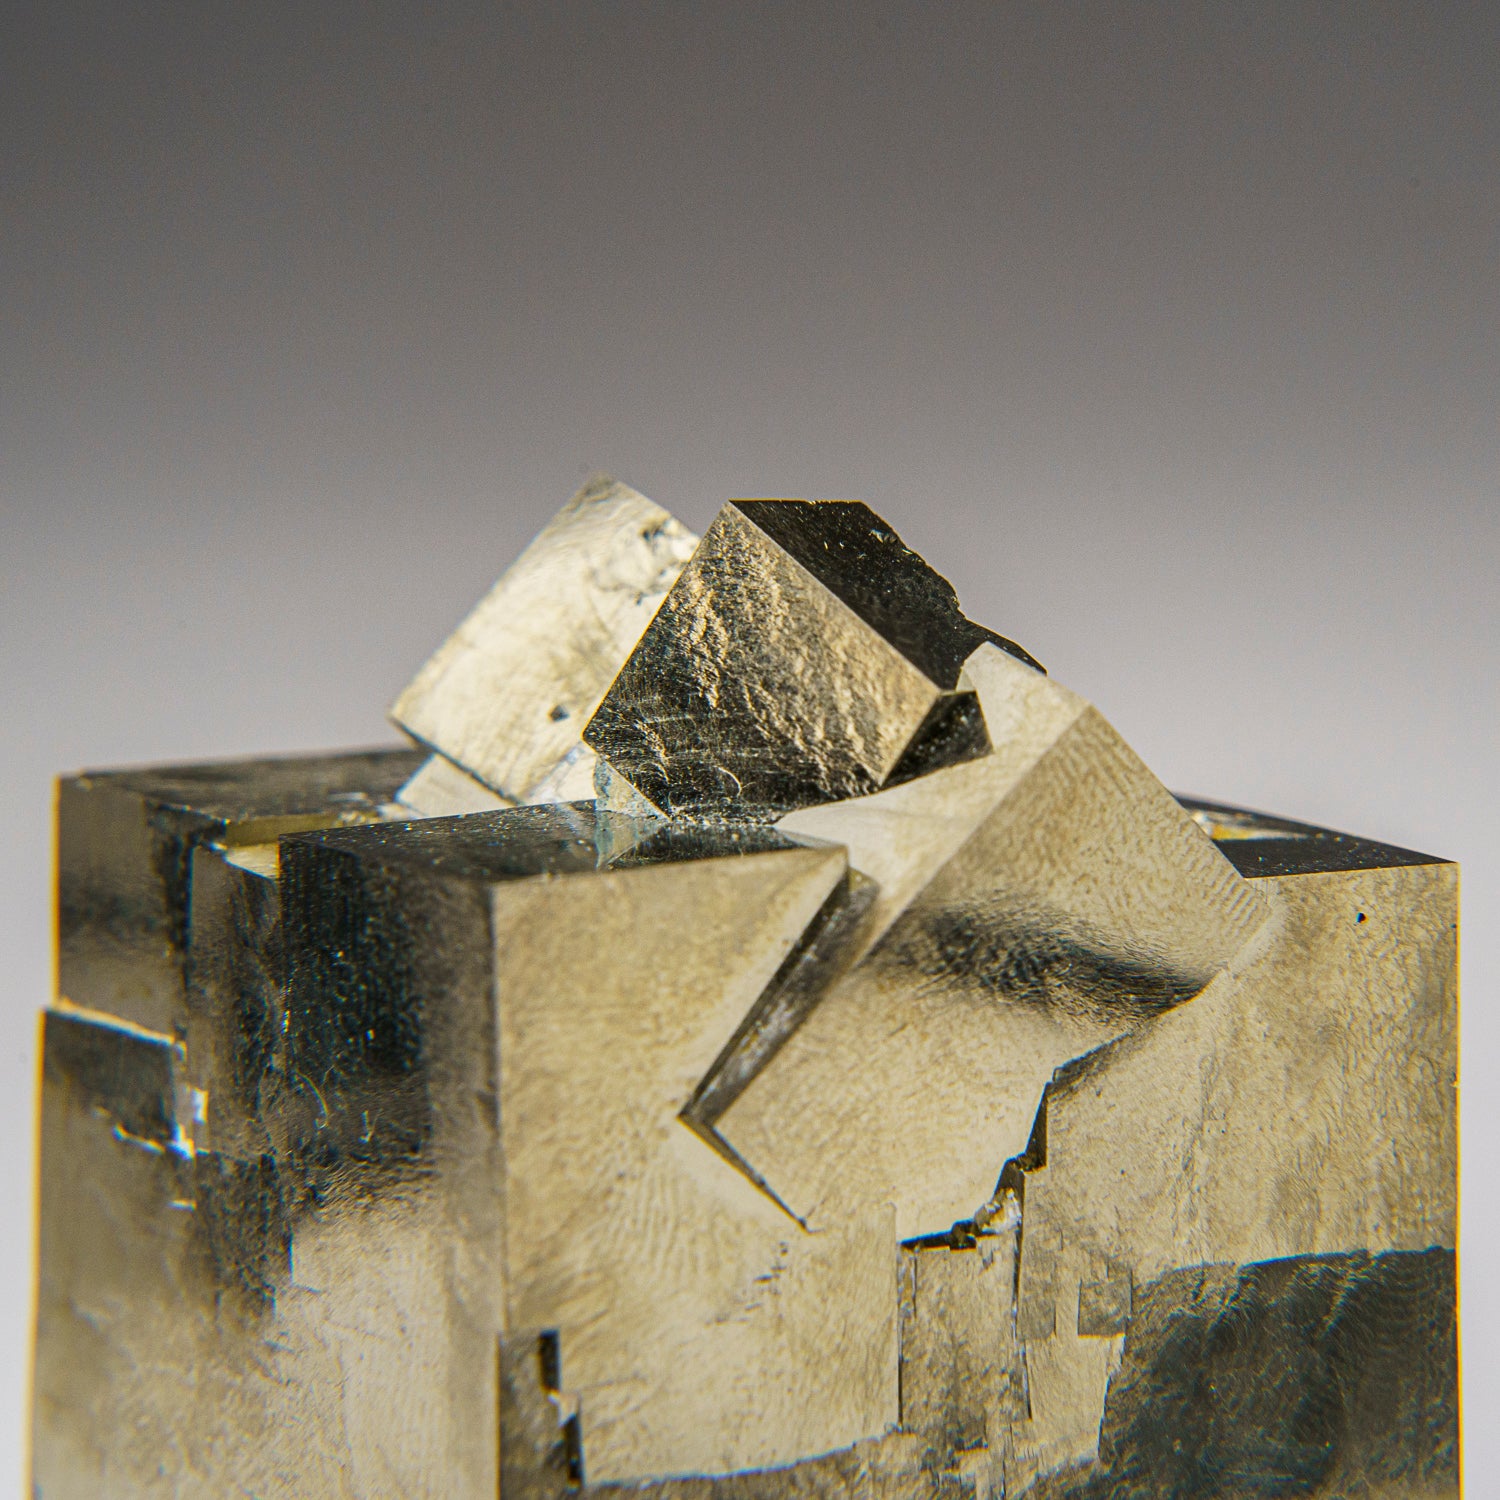 Pyrite Cube from Navajún, La Rioja Province, Spain (266 grams)